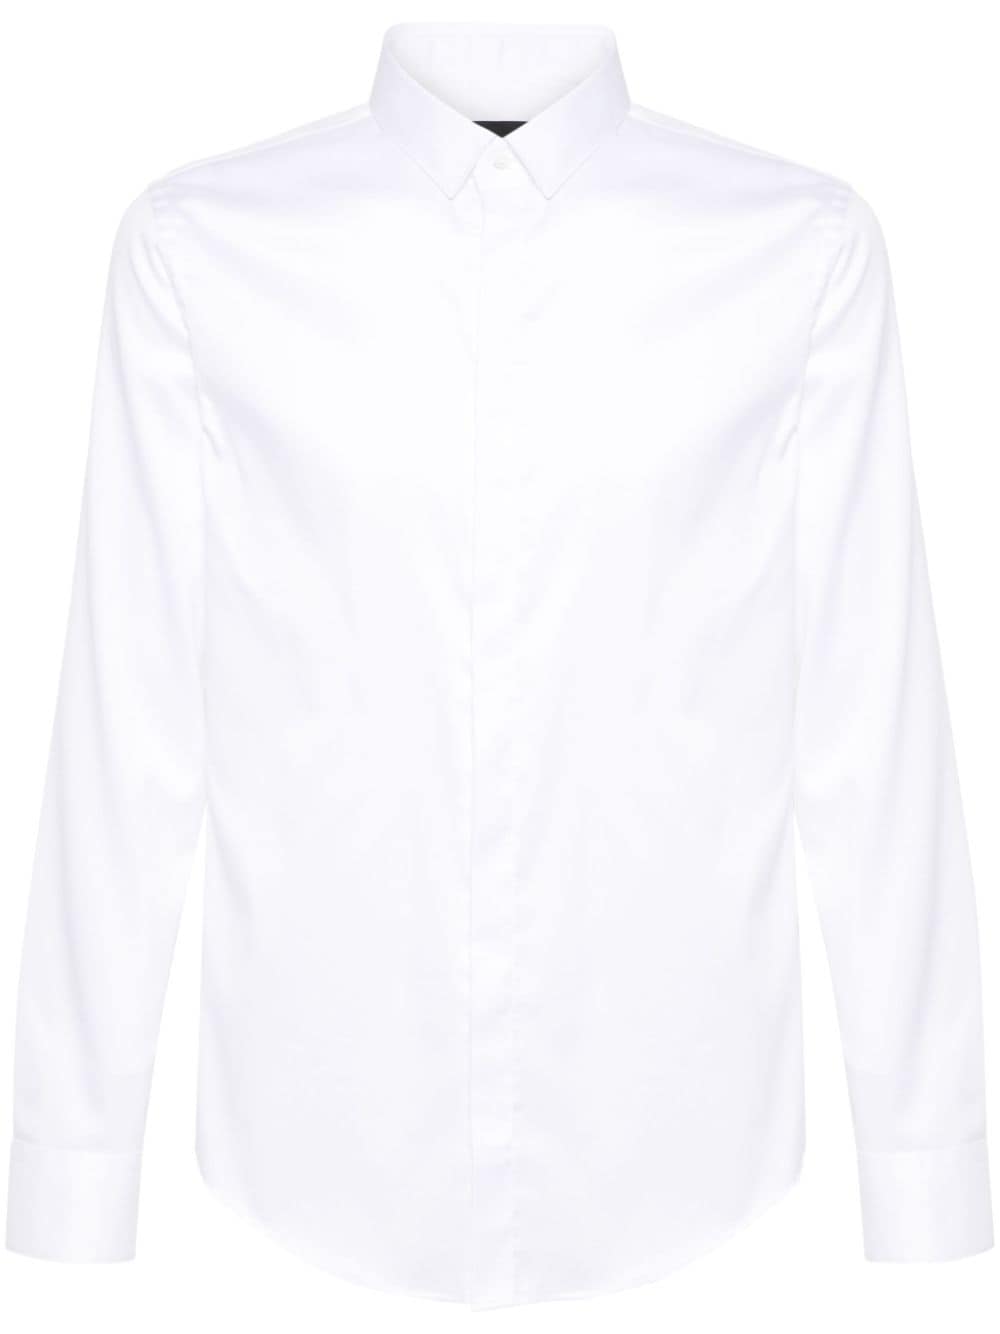 Emporio Armani plain cotton shirt - White von Emporio Armani